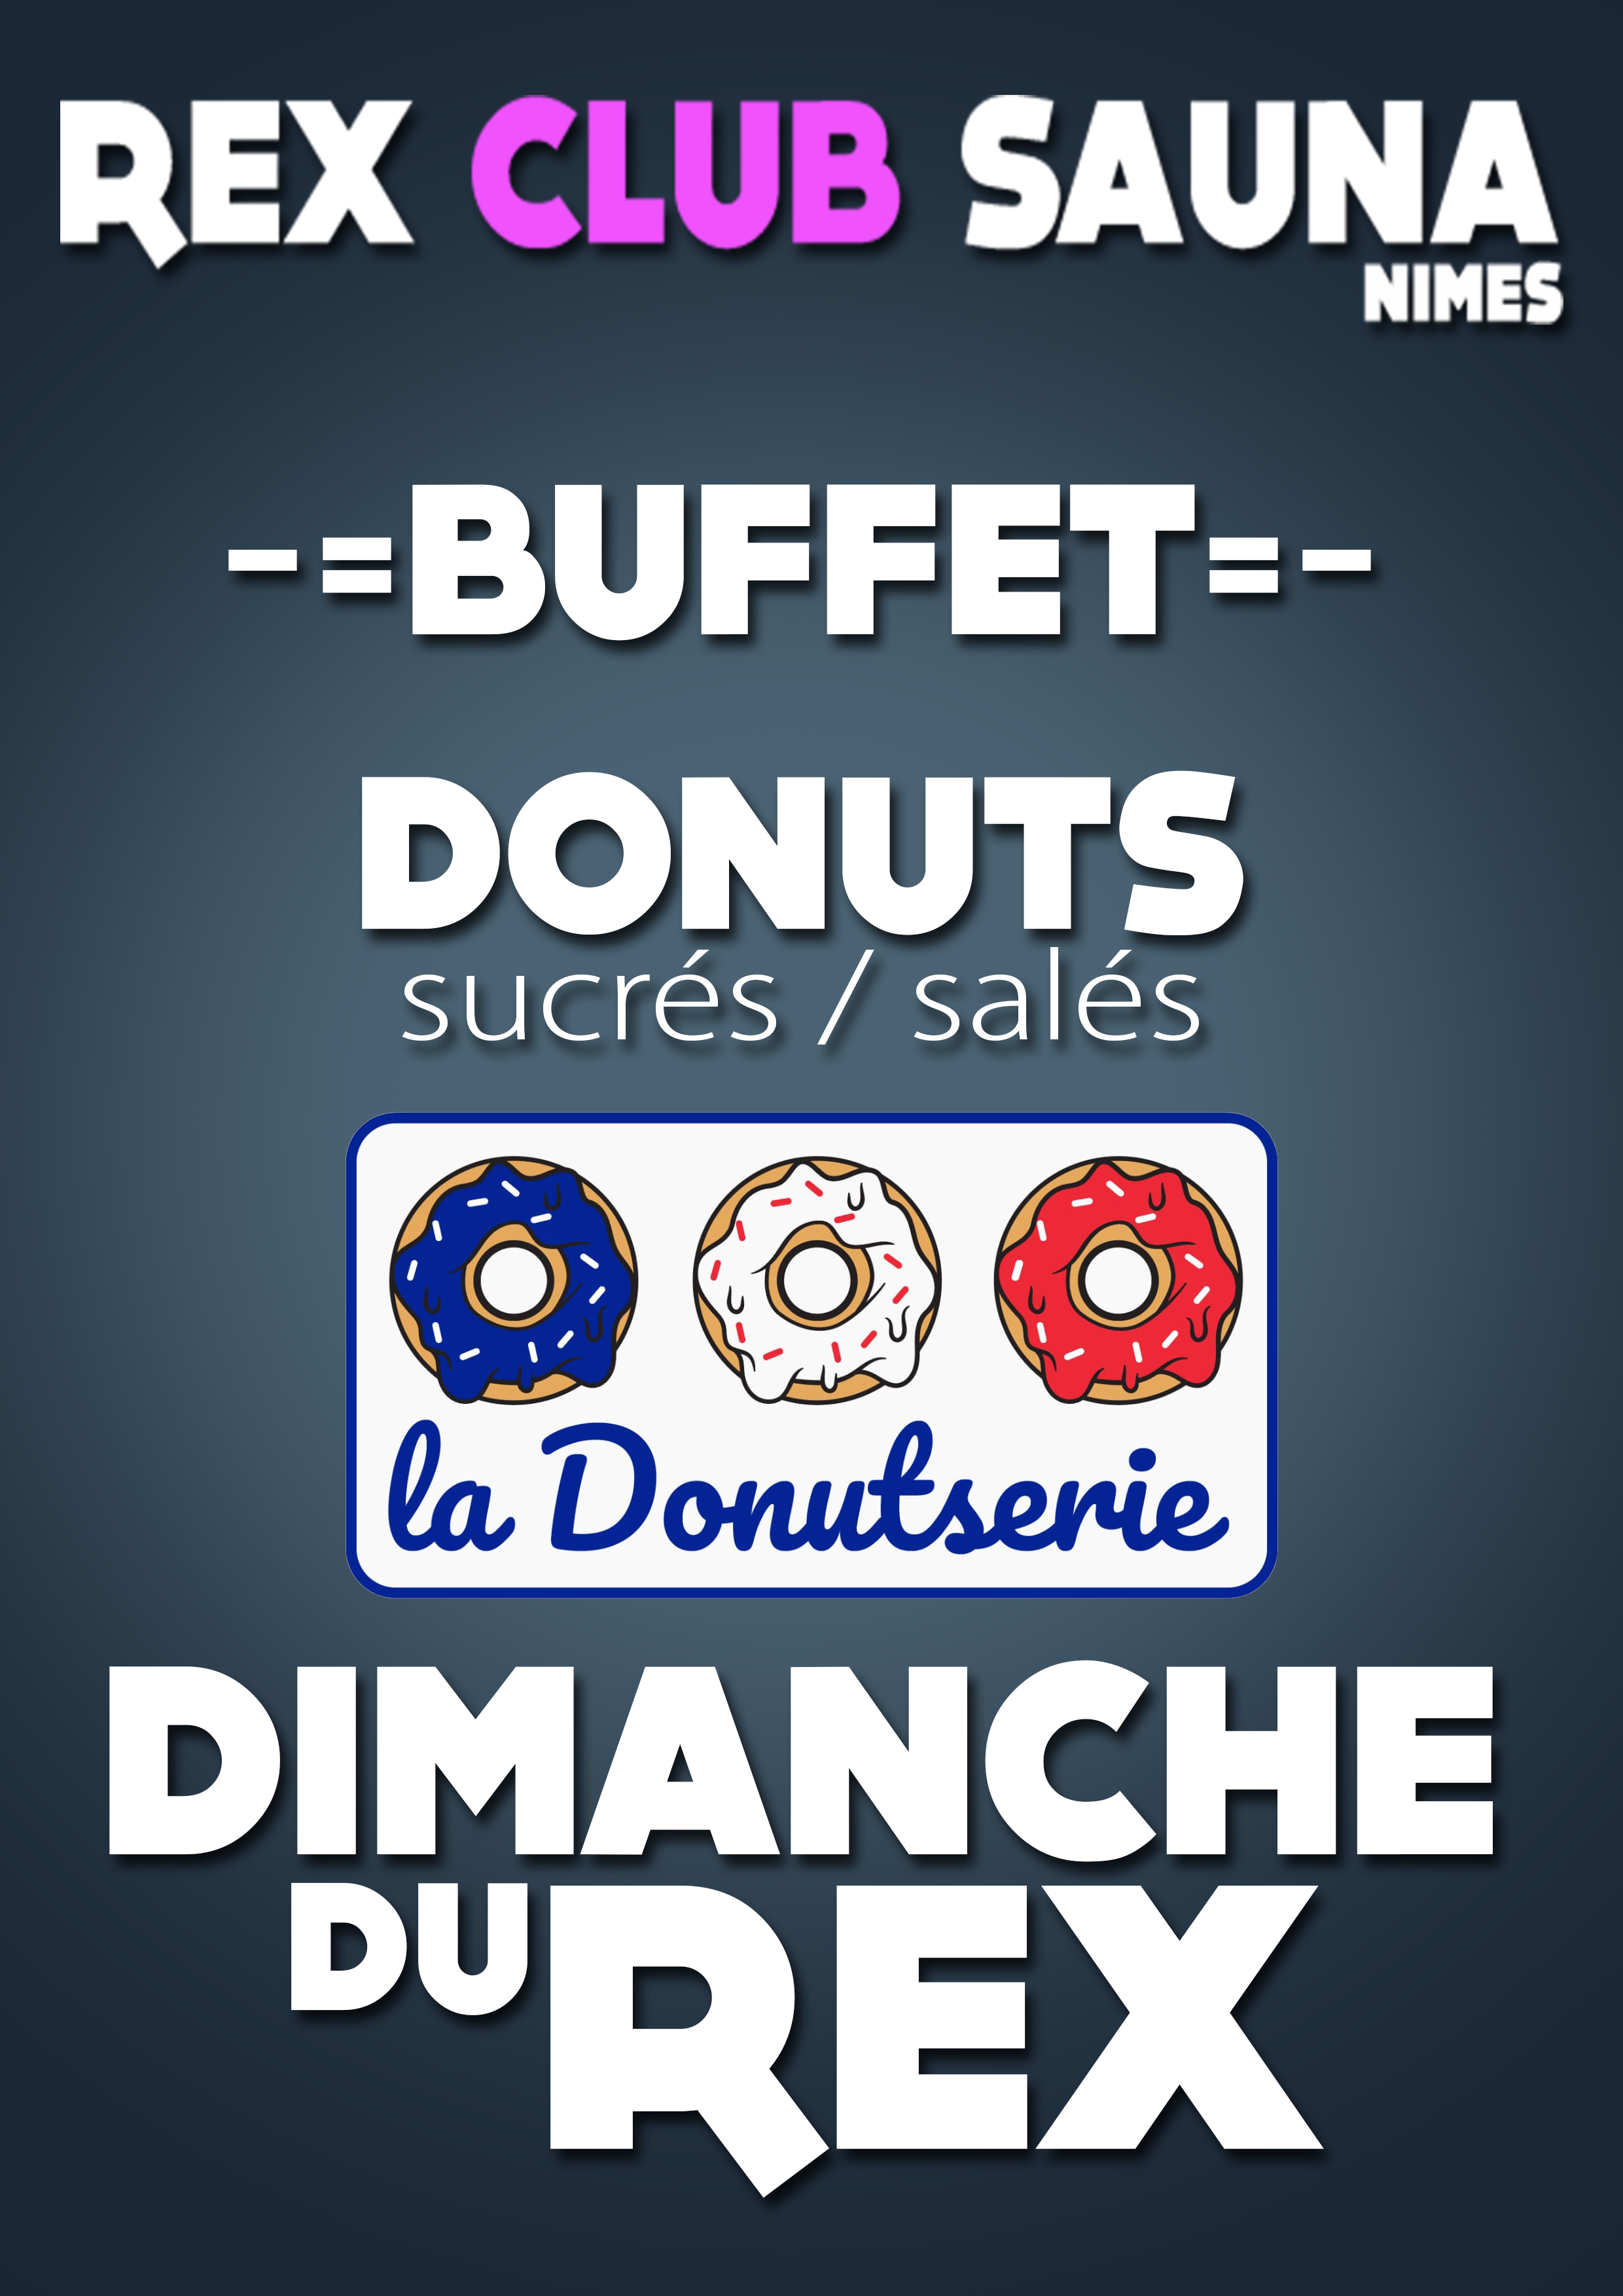 LES DIMANCHES DU REX BUFFET DONUTS @ Rex Club Sauna | Nîmes | Languedoc-Roussillon Midi-Pyrénées | France